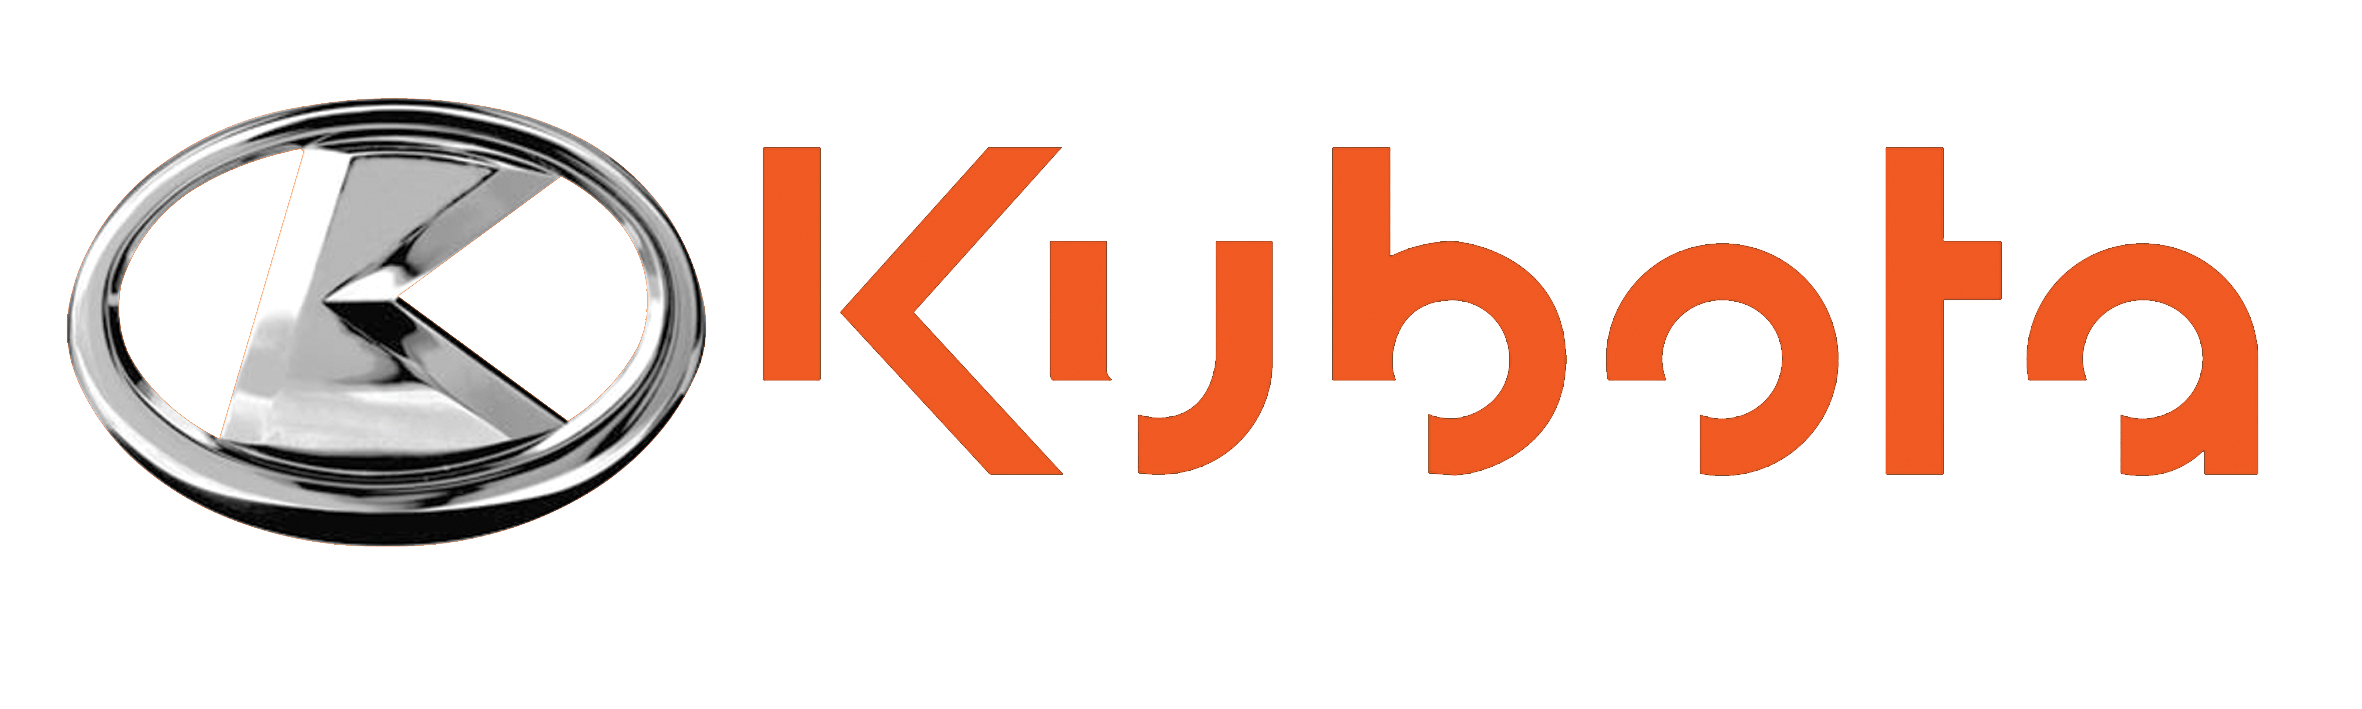 logo kubota